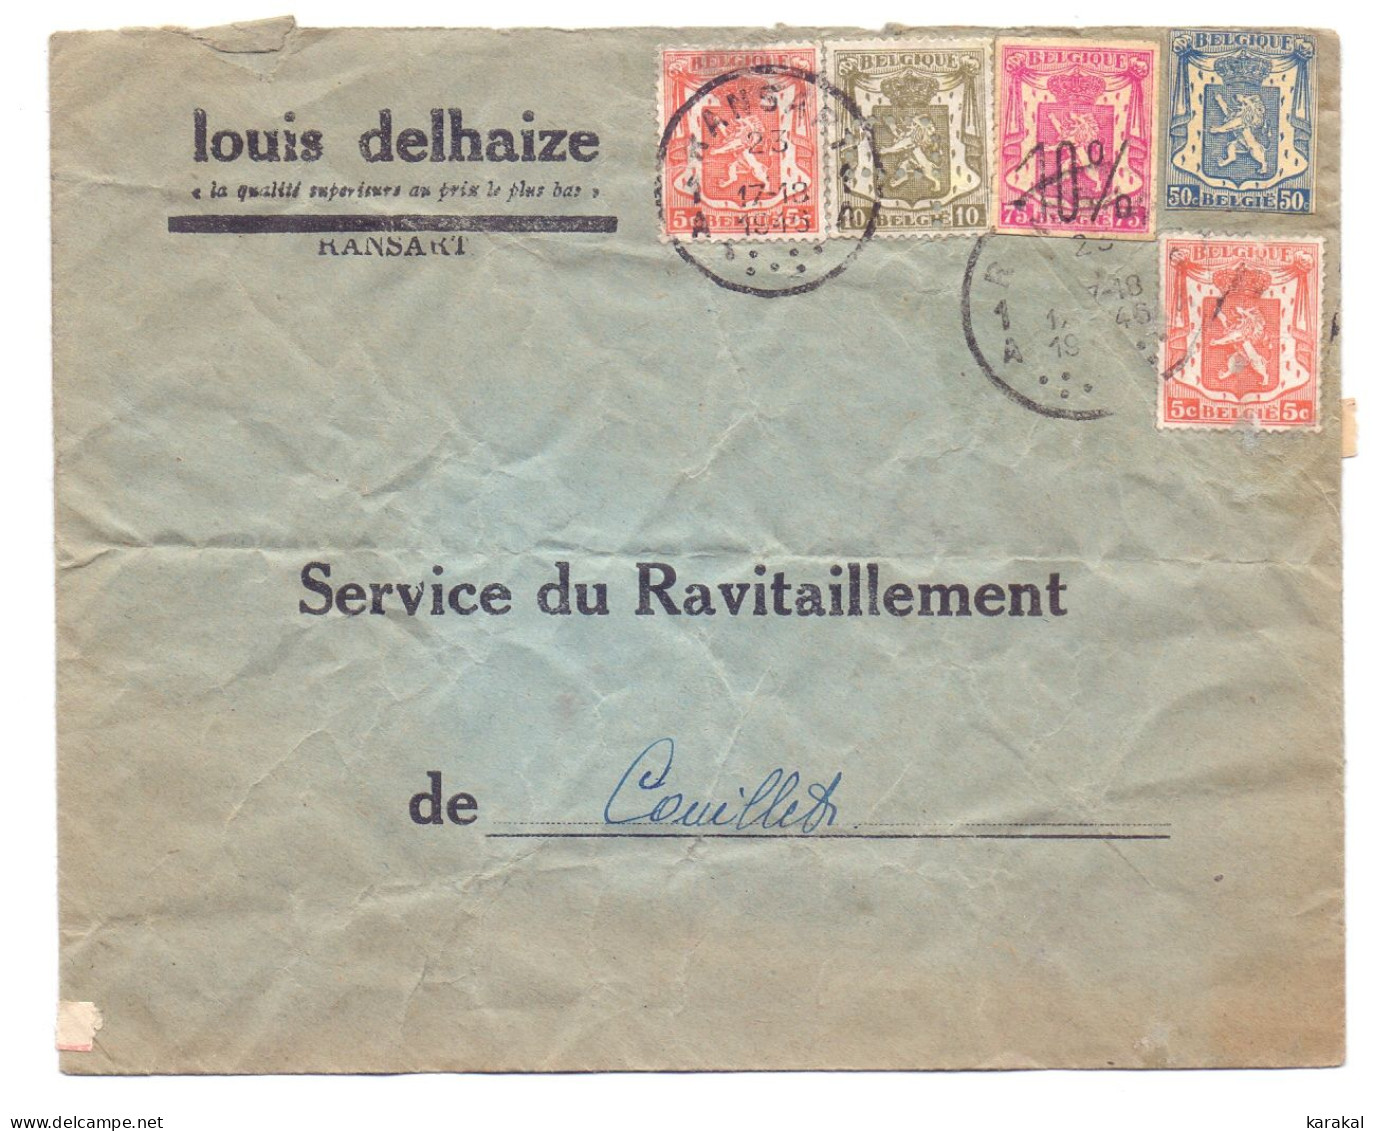 Belgique 419 420 Petit Sceau 5c 10c Moins 10% Lettre Louis Delhaize Service De Ravitaillement Ransart Couillet 1946 - 1946 -10%